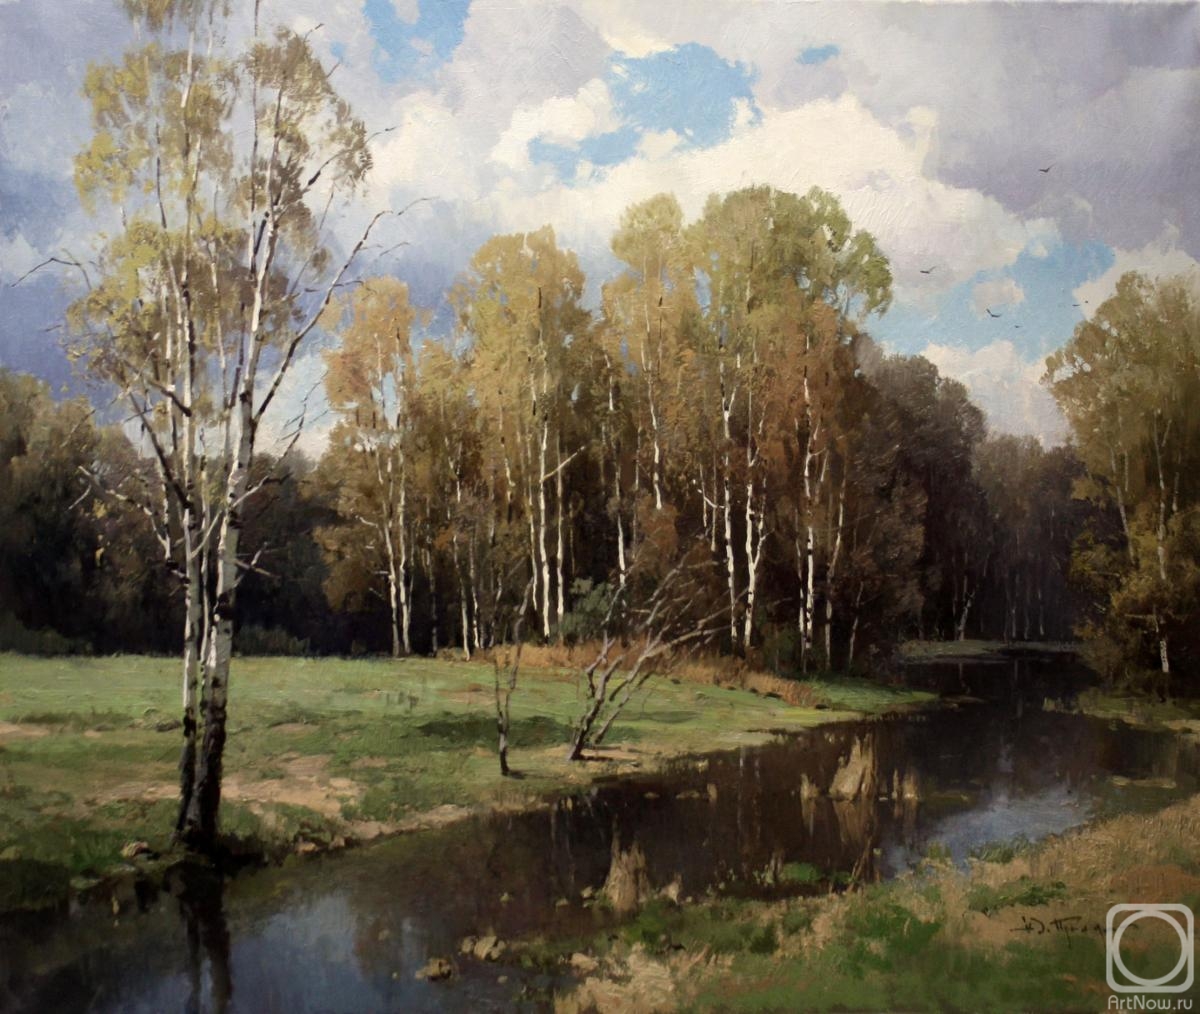 Pryadko Yuriy. At the edge of the forest. September